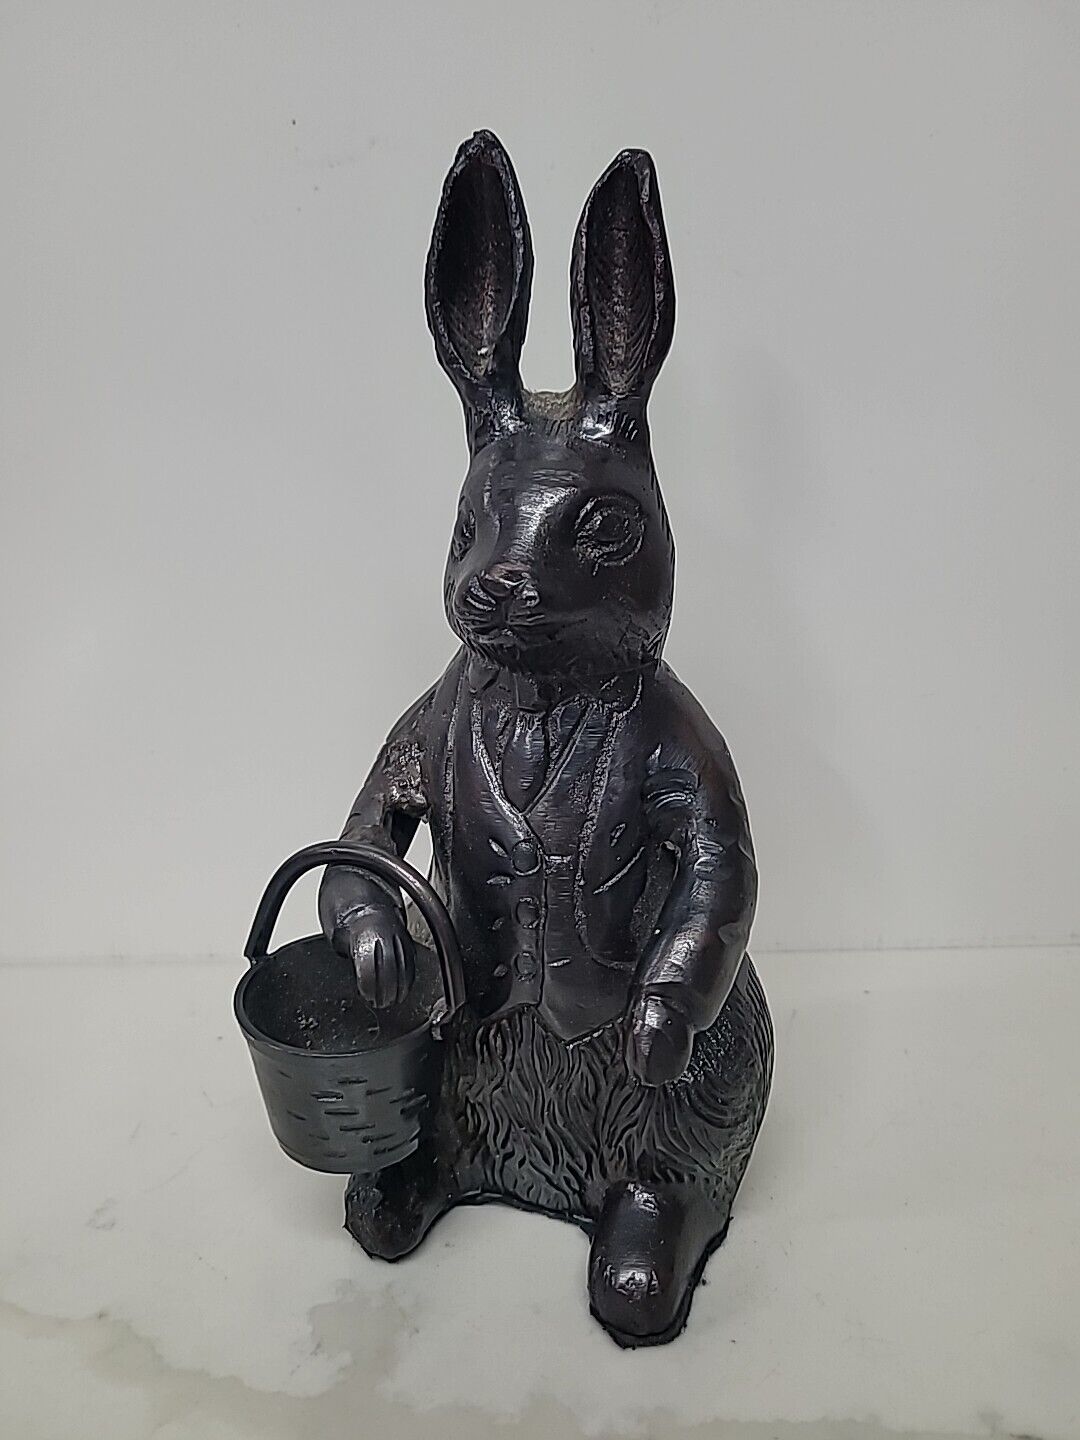 Vintage Bronze Peter Rabbit Bunny Sculpture With Easter Basket Wearing Suit 9”